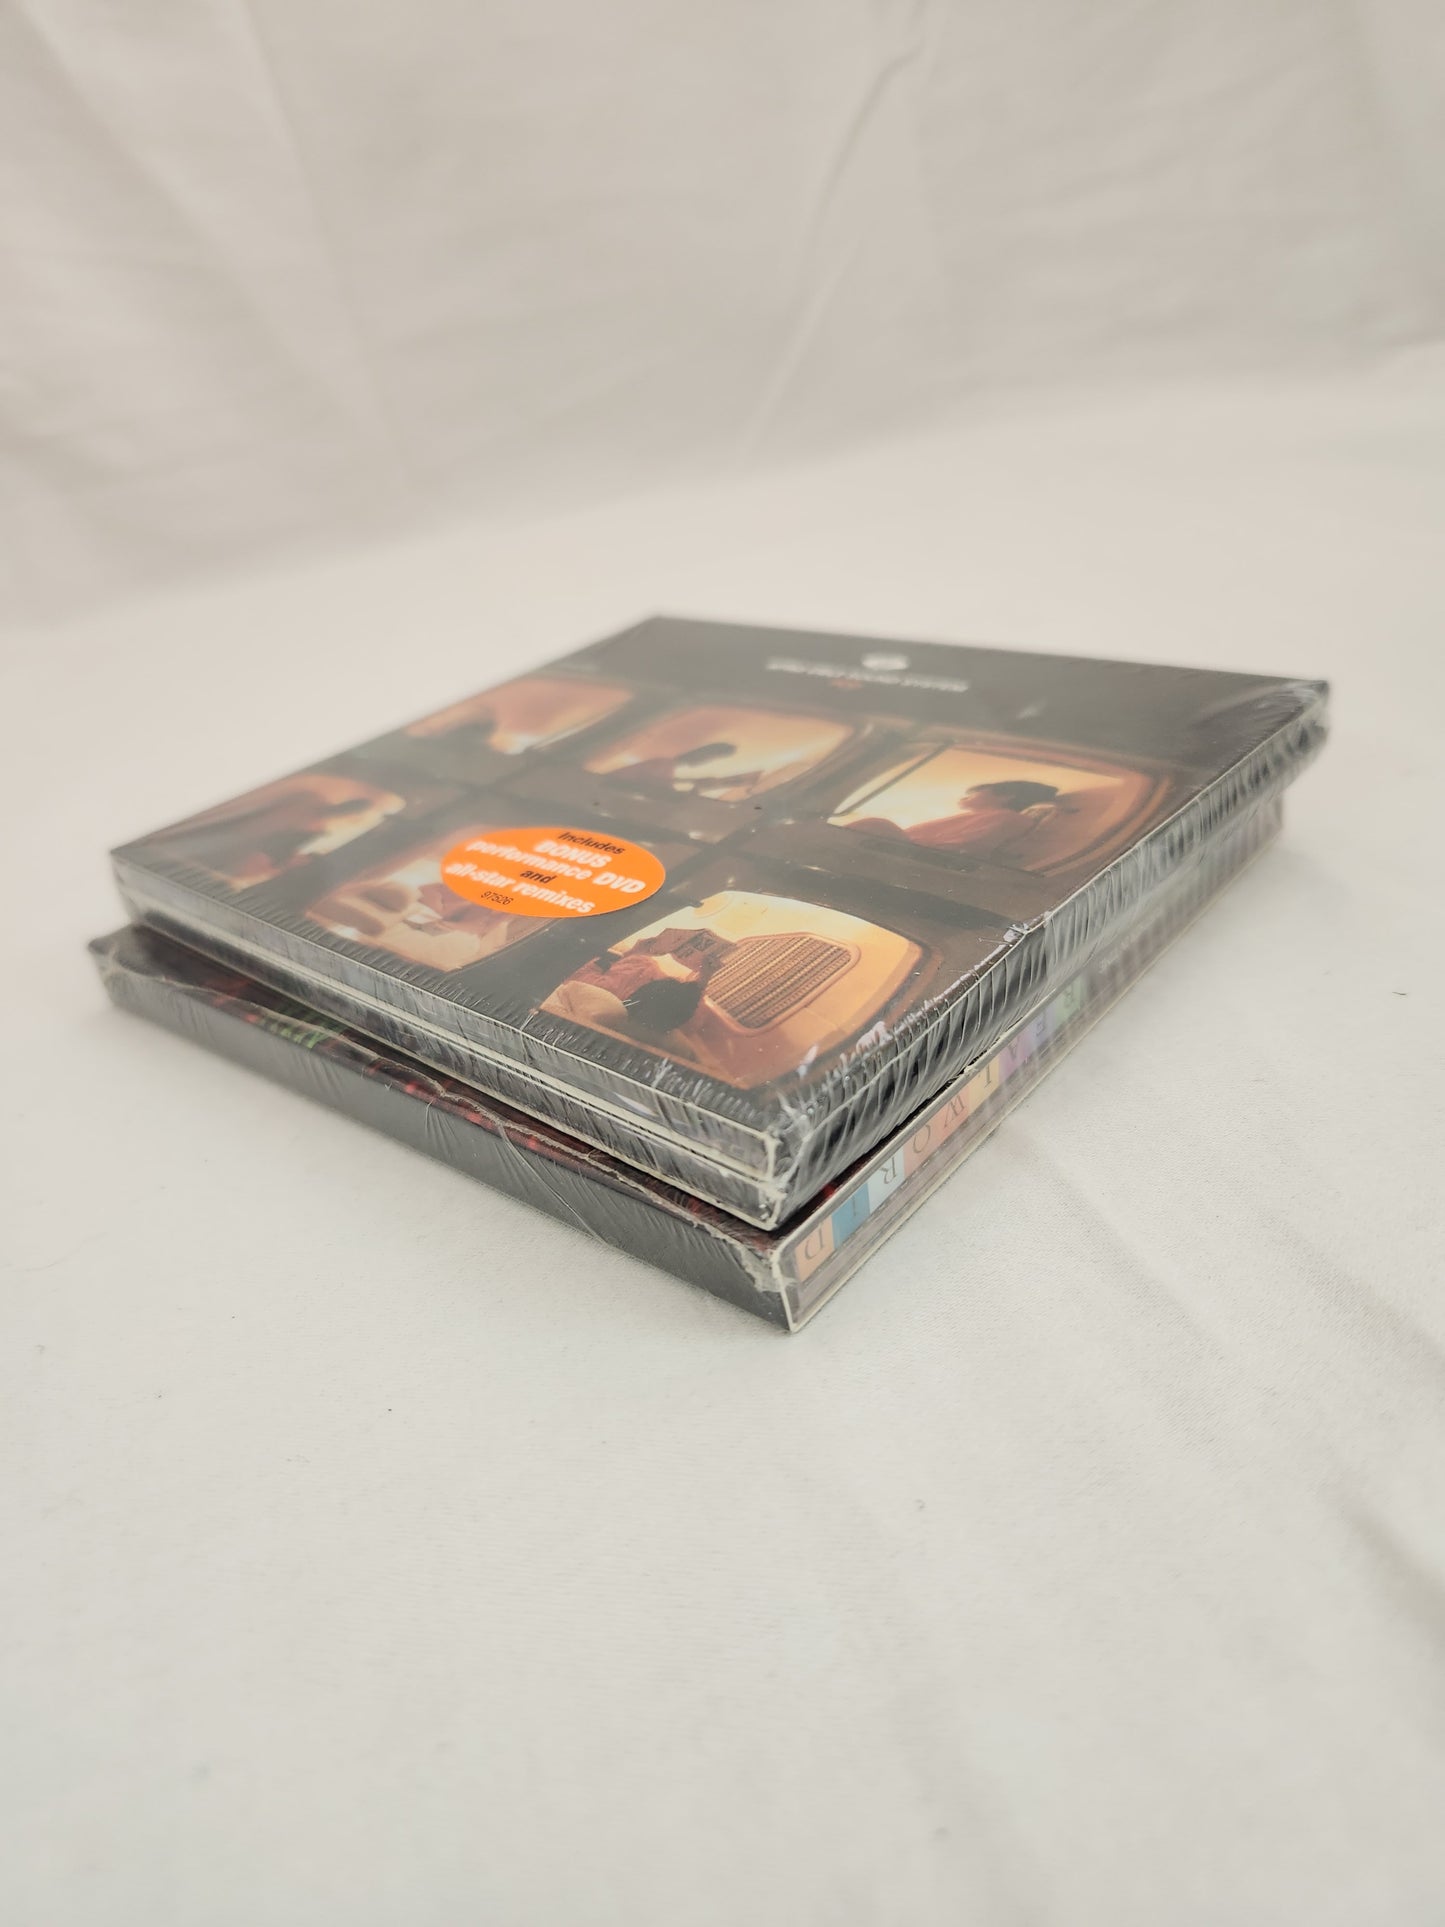 Afro Celt Sound System 2-CD Set (Factory Sealed)